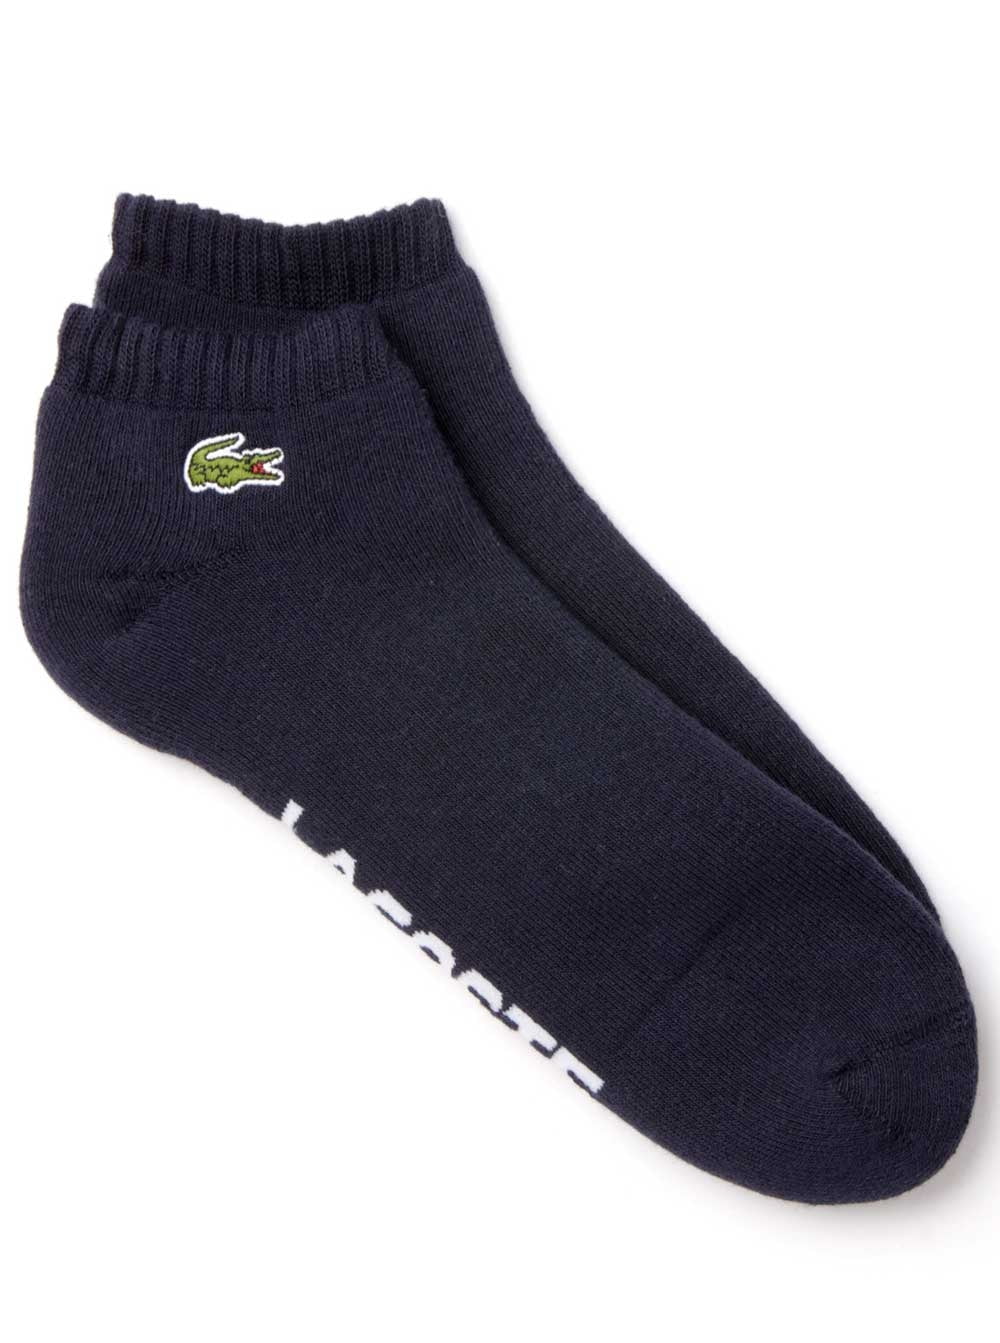 lacoste socks women's